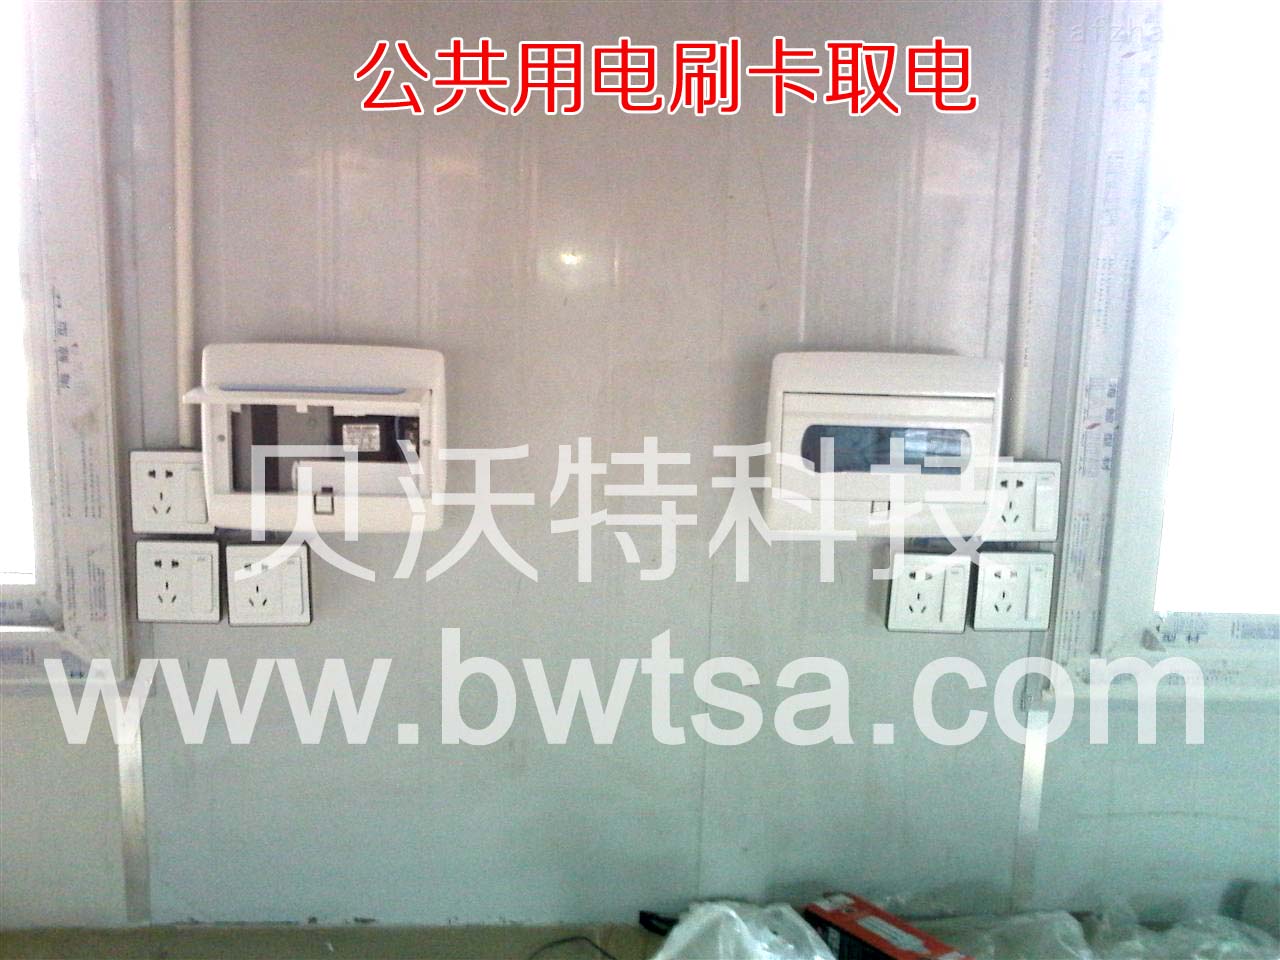 贝沃特BWT-D03刷卡控电器，IC卡控电器，IC卡计时器，刷卡供电系统